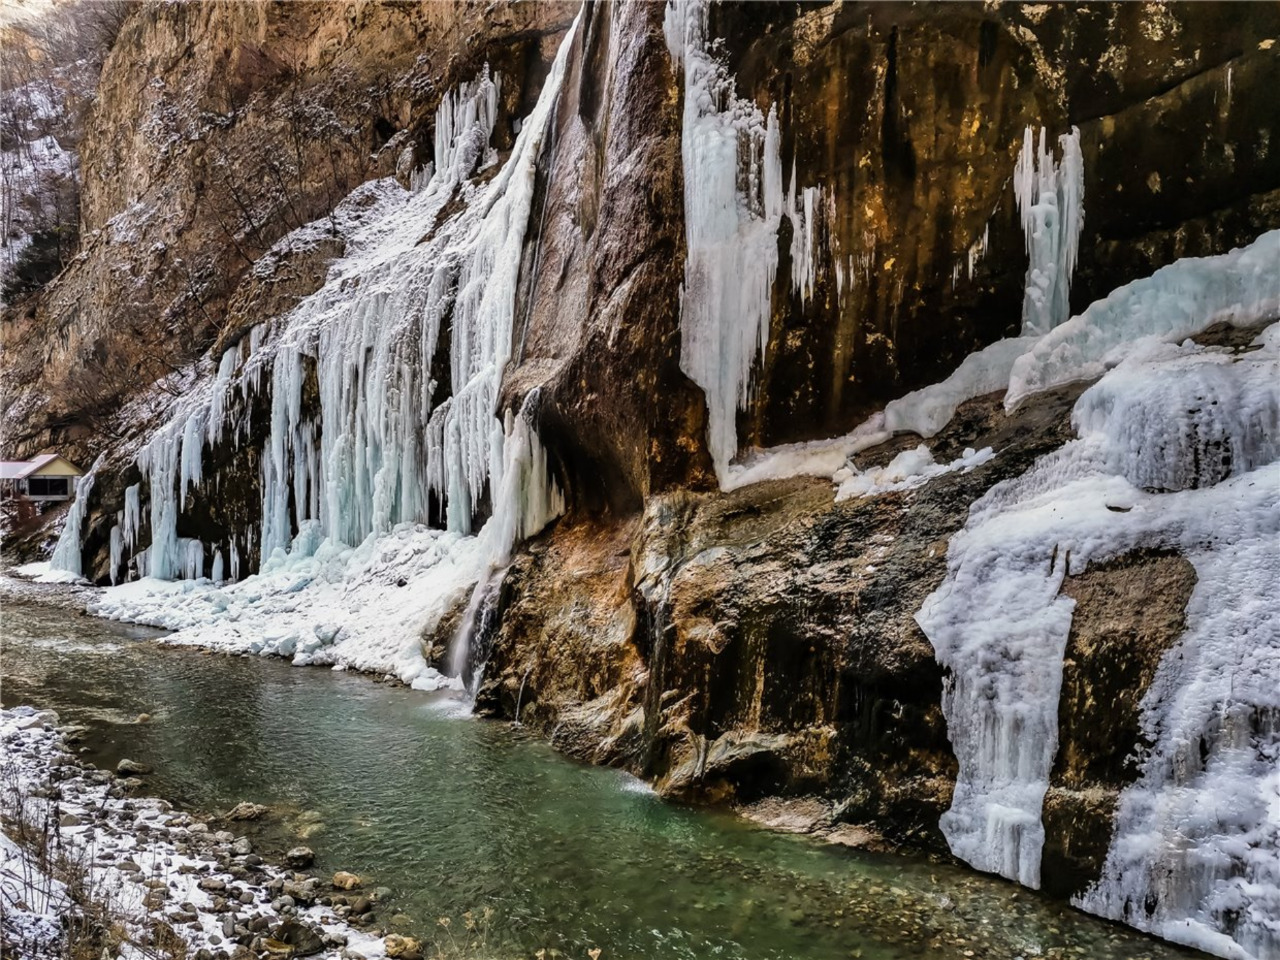 Чегемские водопады, Гижгит, Актопрак из Ессентуков | Цена 3700₽, отзывы, описание экскурсии